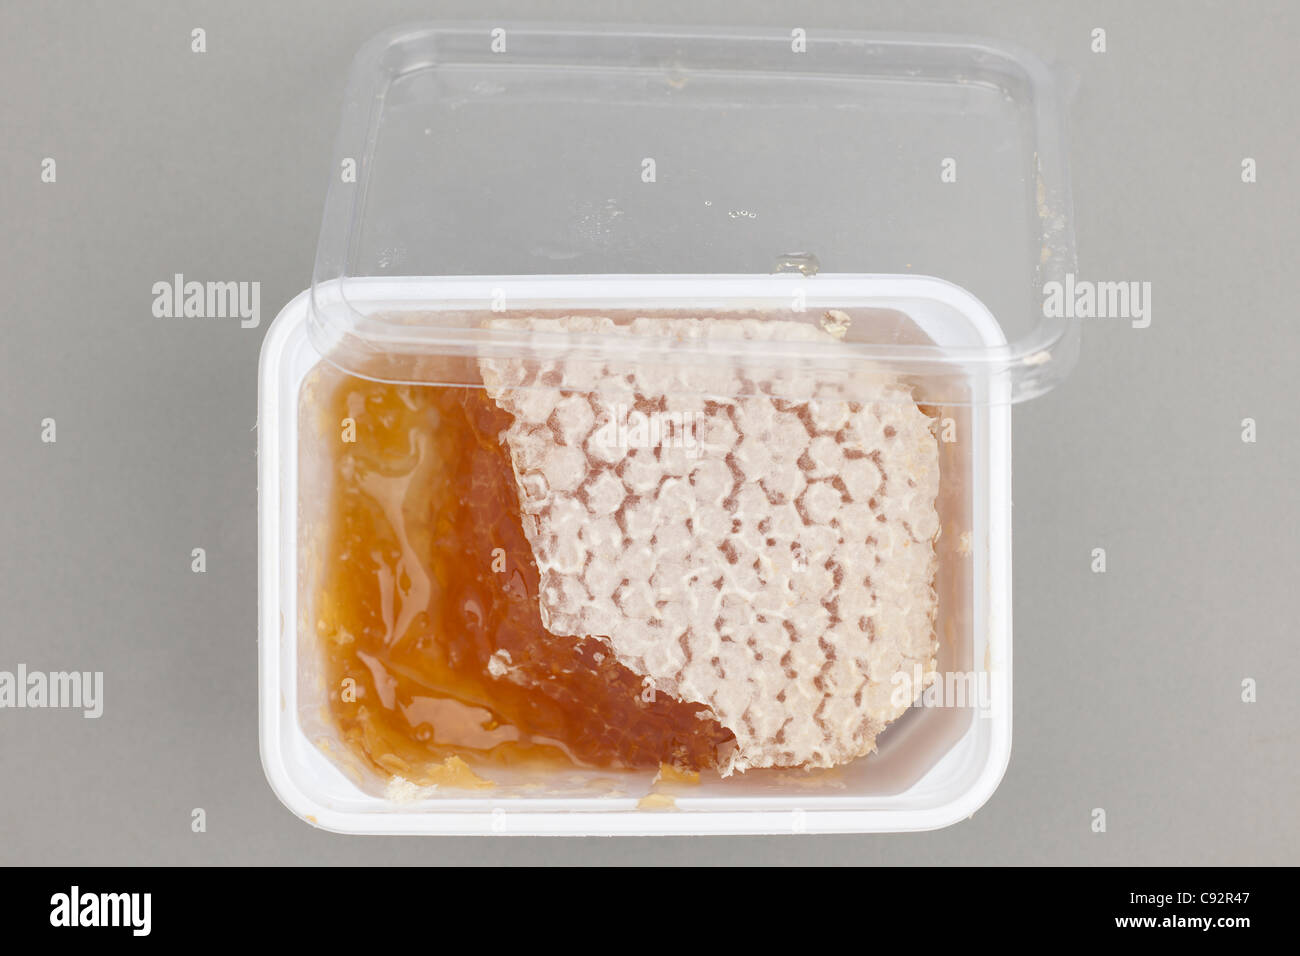 Tub of Comb honey Stock Photo